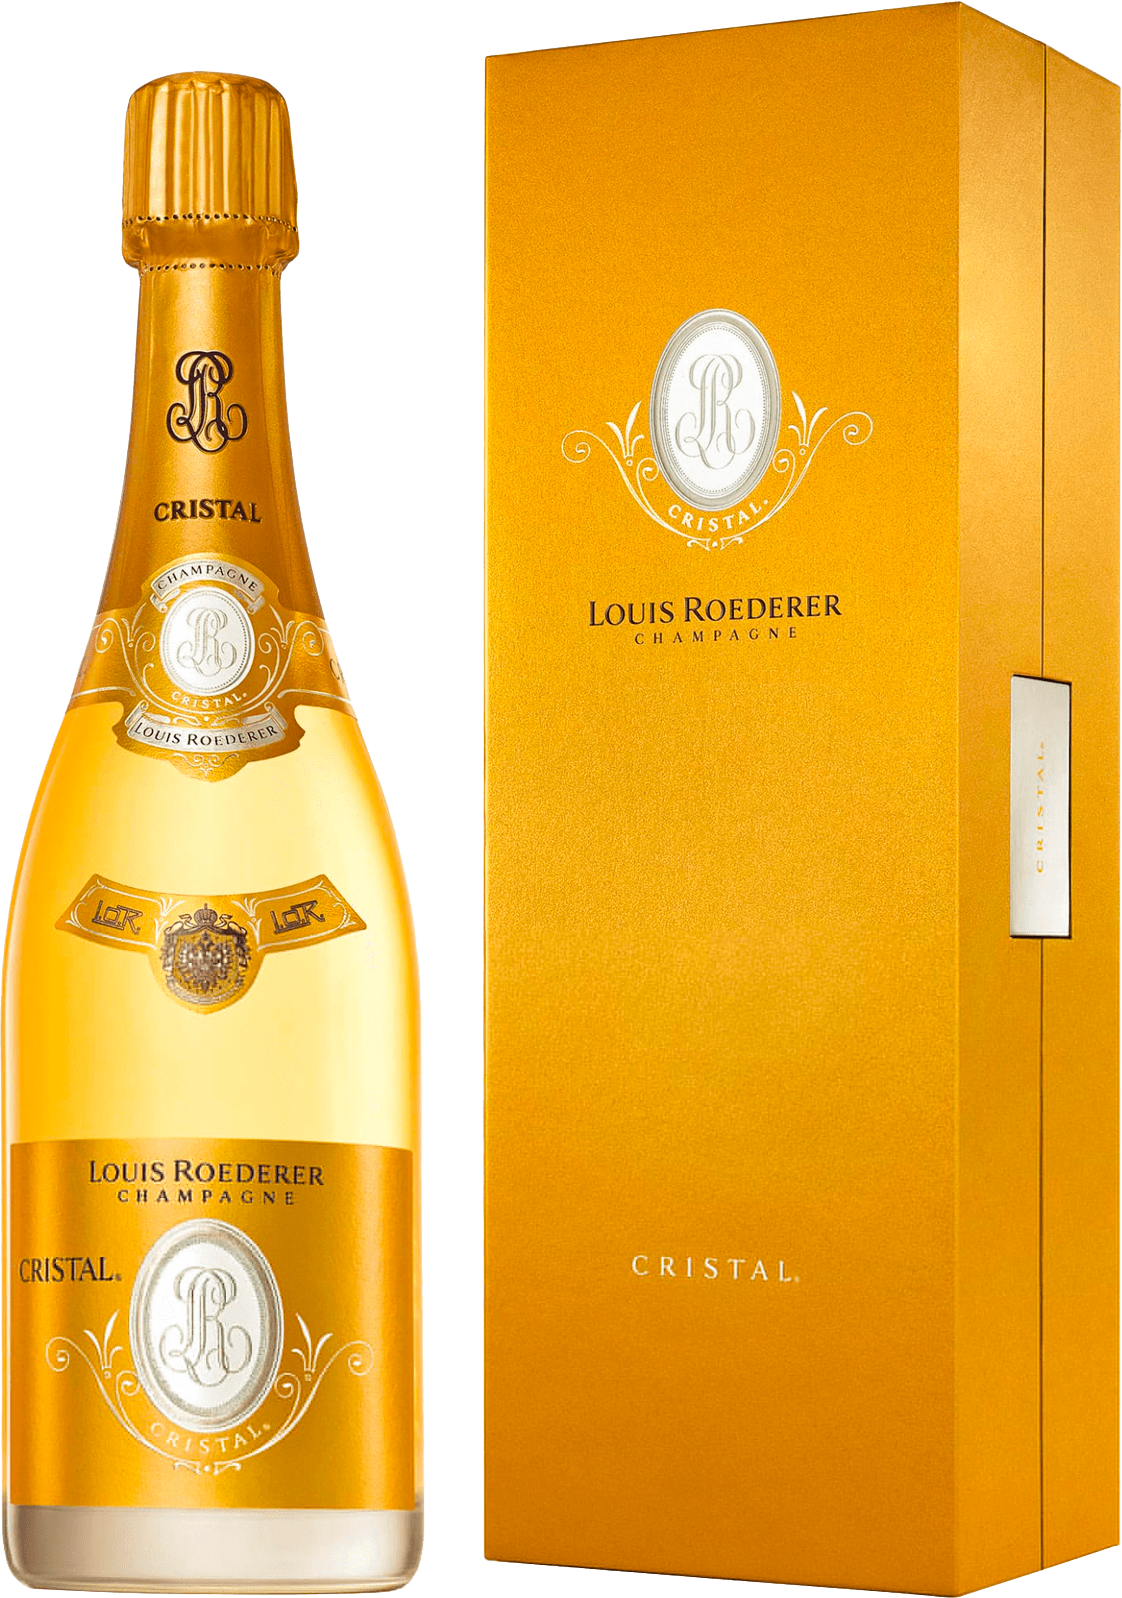 Cristal roederer en coffret 2007  Roederer, Champagne